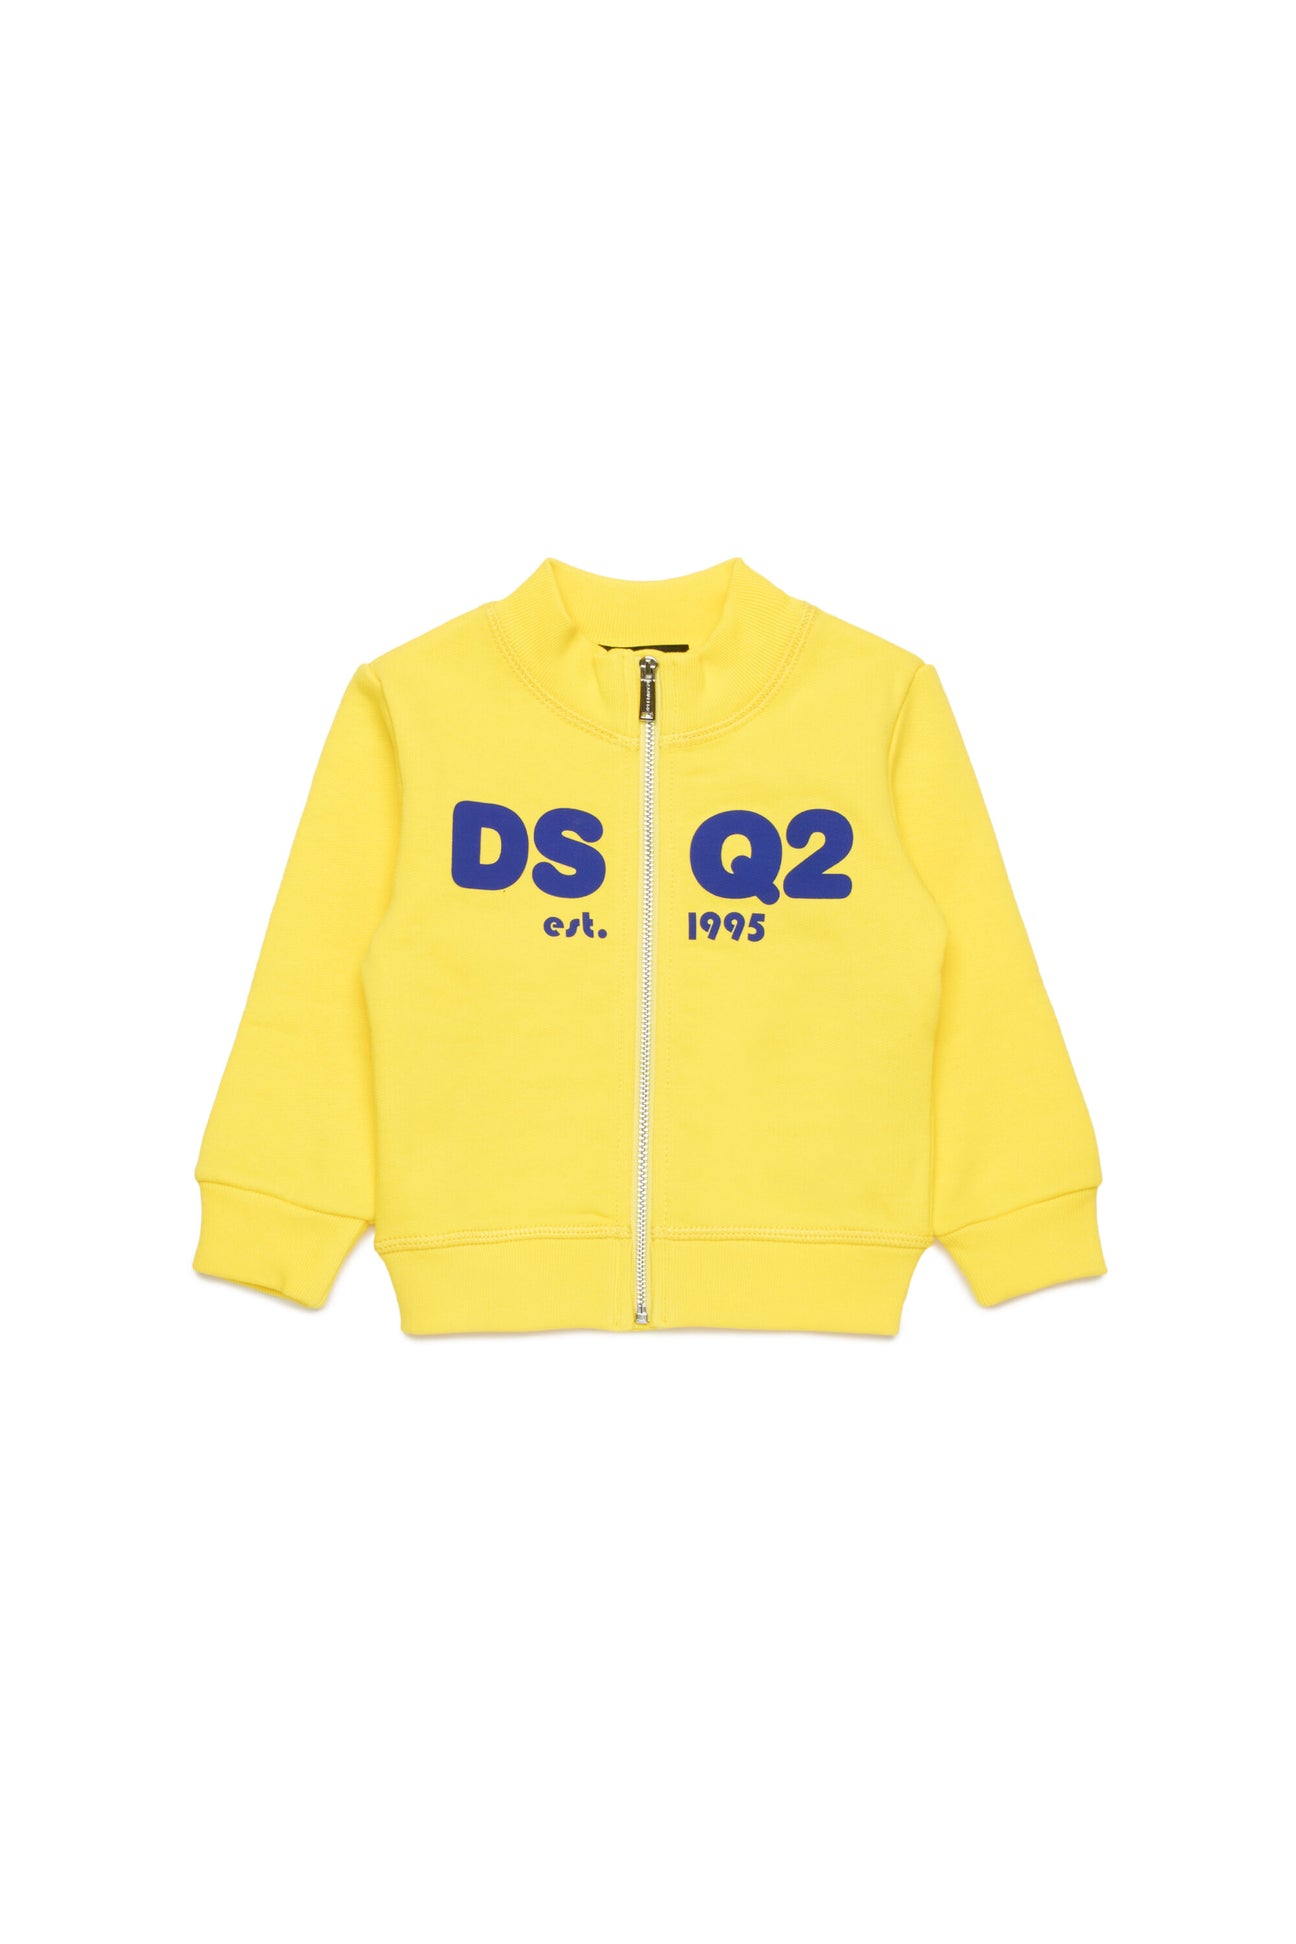 Sweatshirt with zip and logo DSQ2 est.1995 